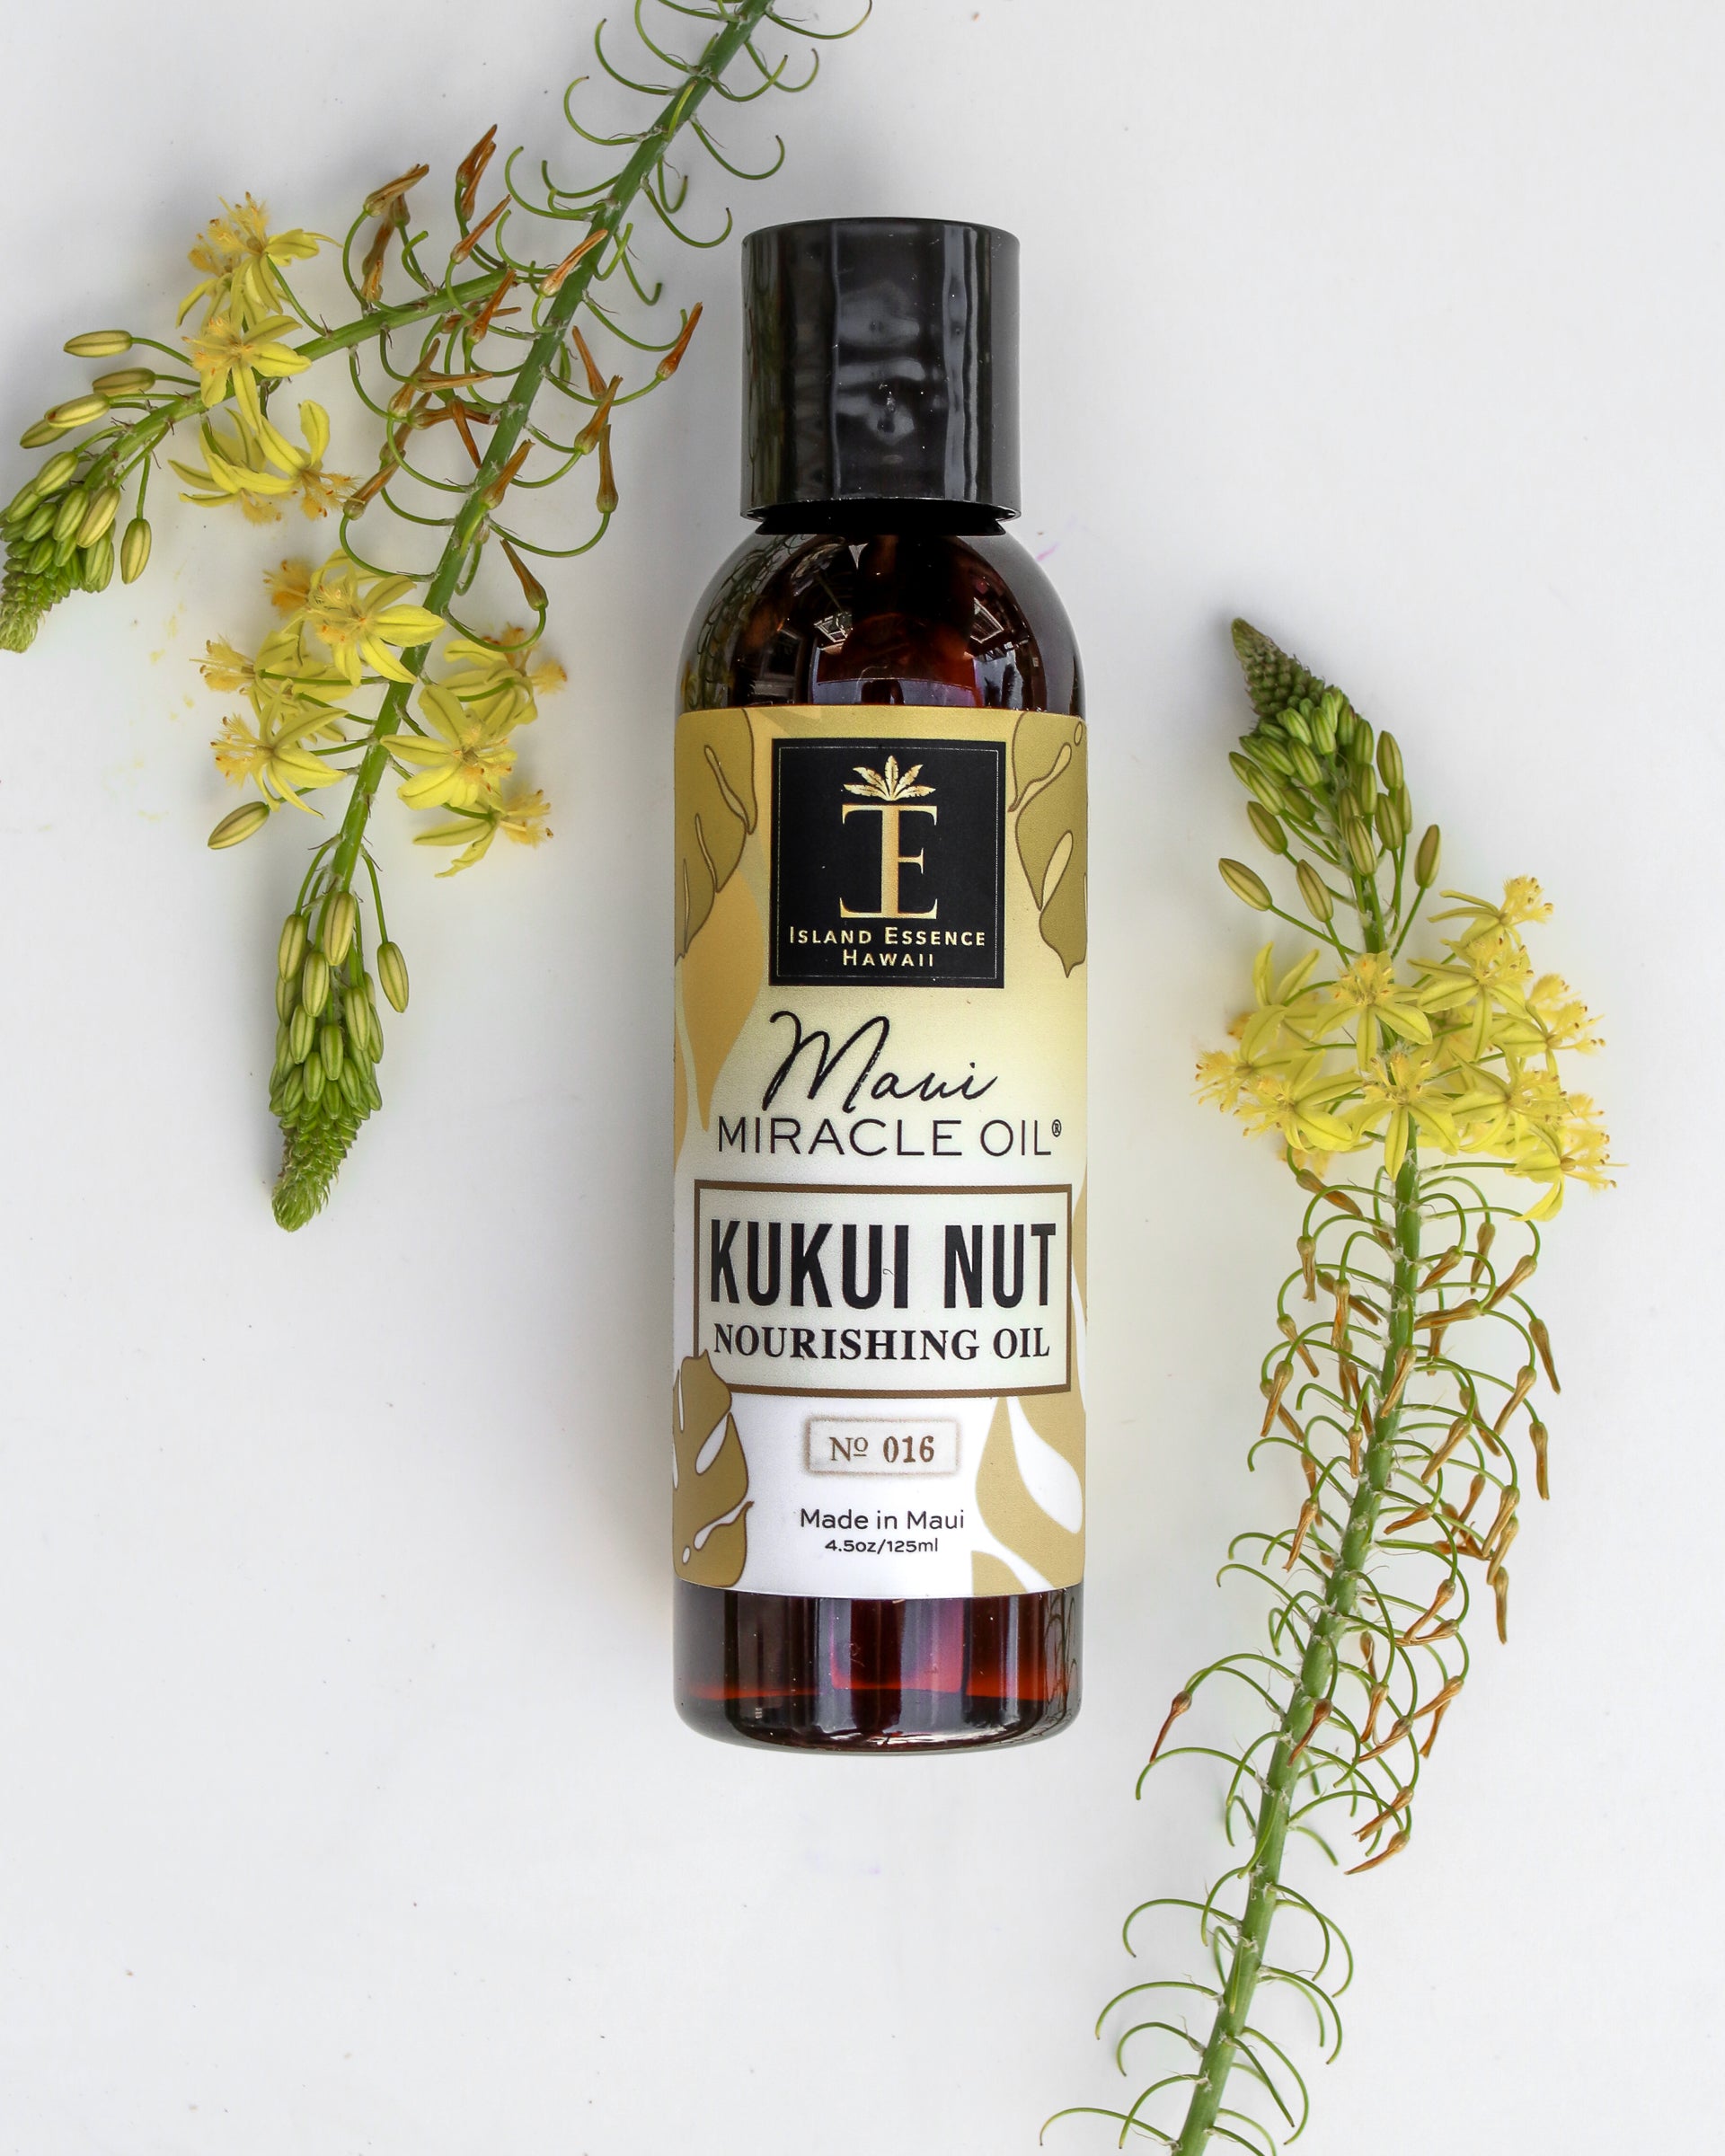 Pop-Up Mākeke - Island Essence - Kukui Nut Nourishing Oil